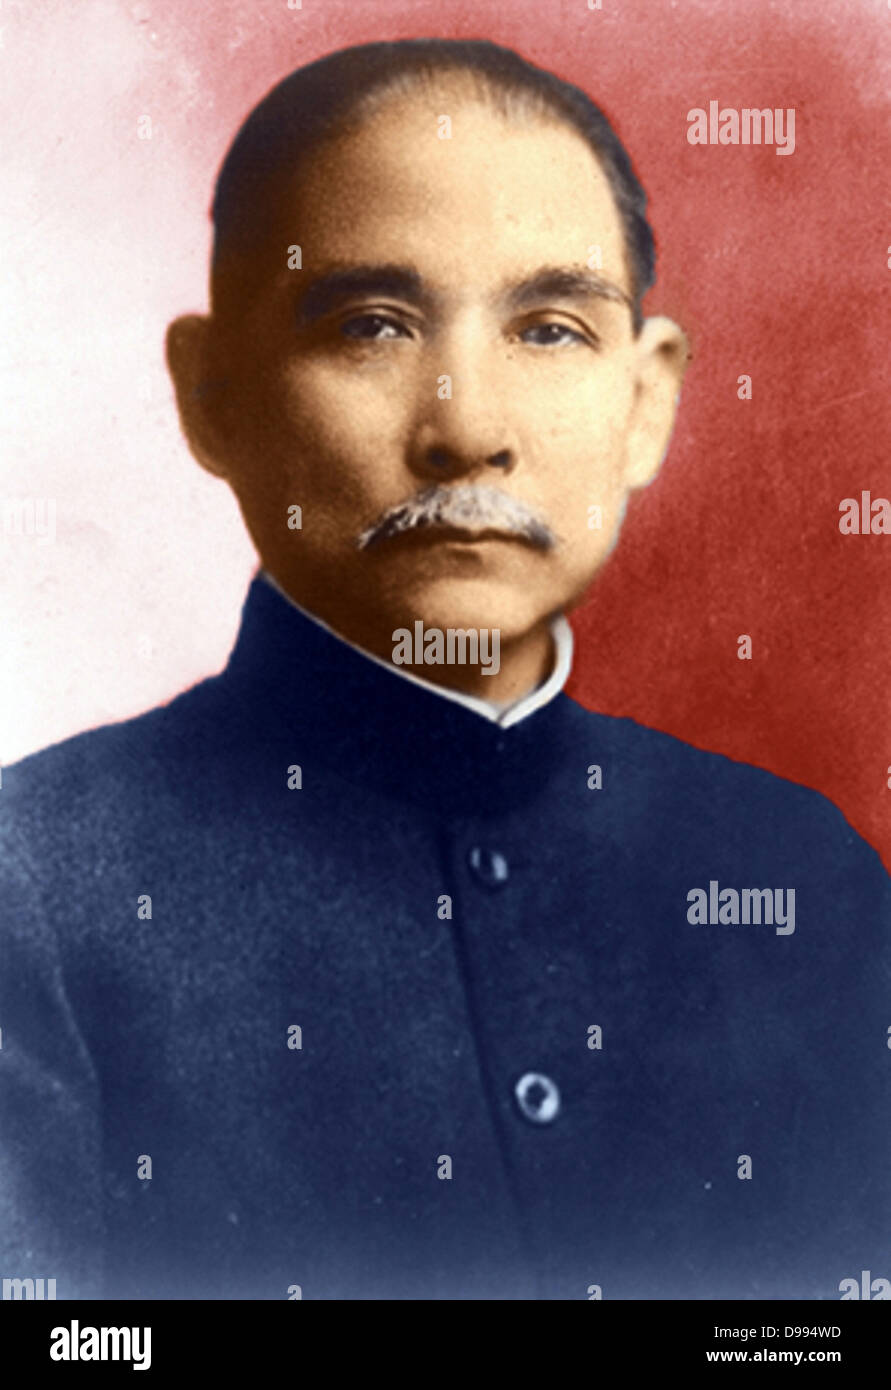 Sun Yat-sen (1866-1925) der chinesischen revolutionären und politischen Führer, der eine entscheidende Rolle bei den Sturz der Qing-Dynastie im Oktober 1911, den letzten kaiserlichen Dynastie Chinas gespielt. Nationalistische Stockfoto